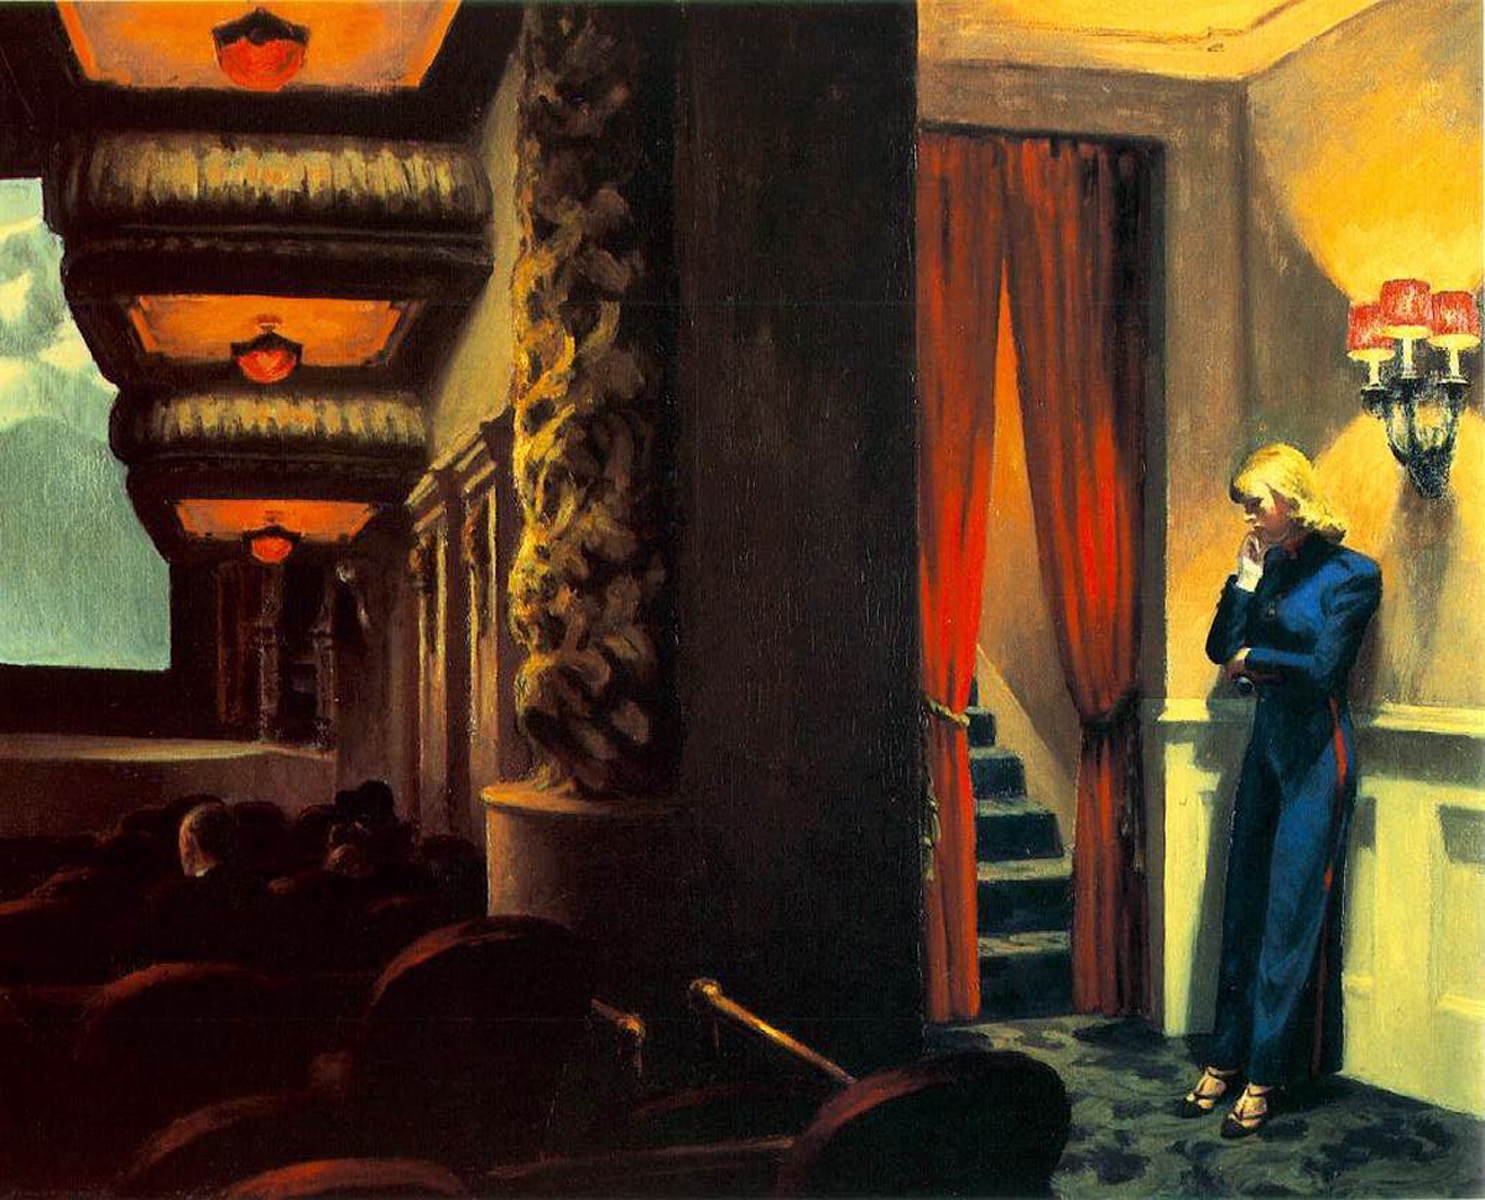 Kino w Nowym Jorku by Edward Hopper - 1939 - 81.9 x 101.9 cm 